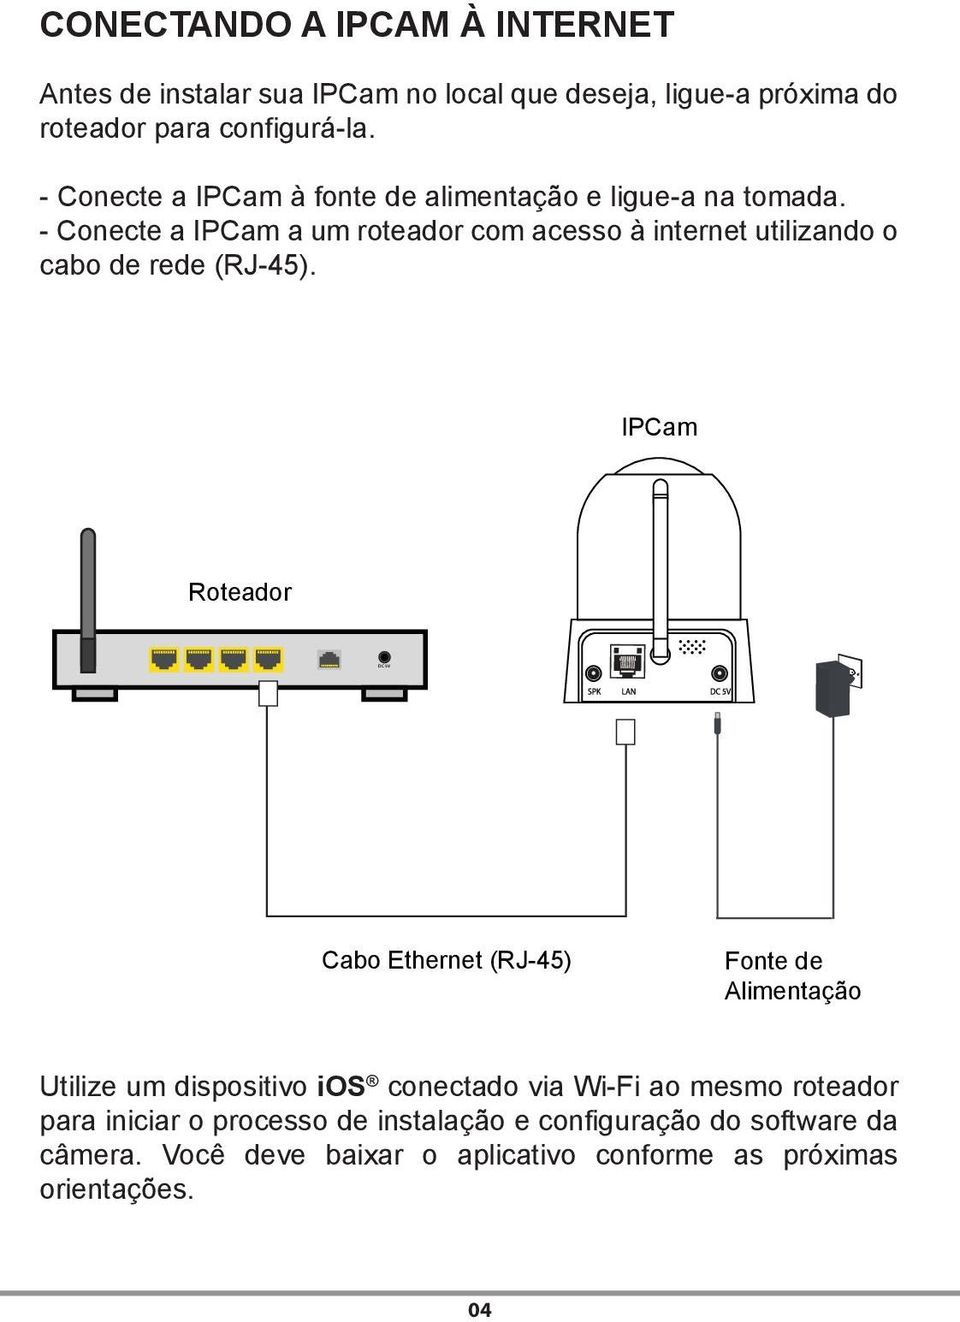 - Conecte a IPCam a um roteador com acesso à internet utilizando o cabo de rede (RJ-45).